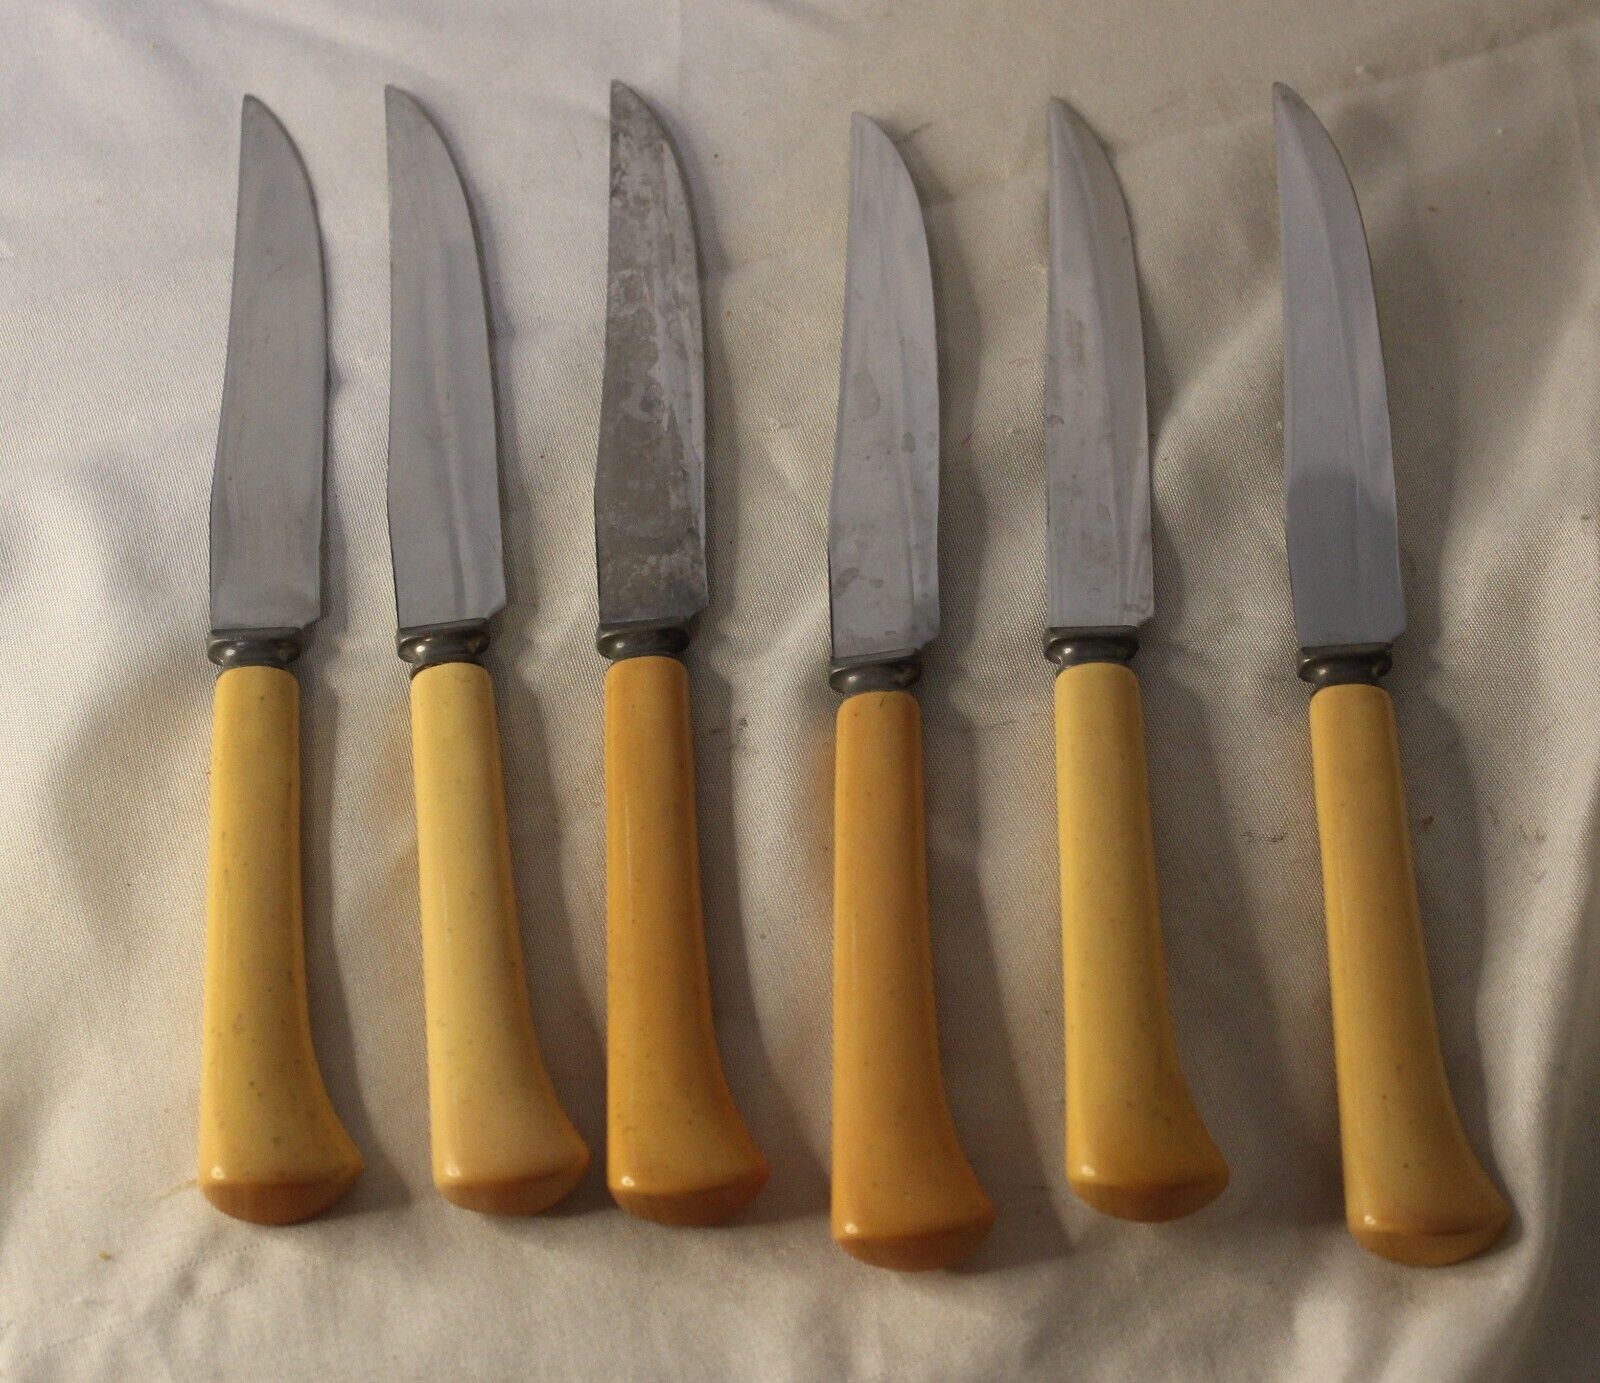 VTG 6 Royal Brand Sharp Cutter Steak Knives Bakelite Handles Stainless Steel